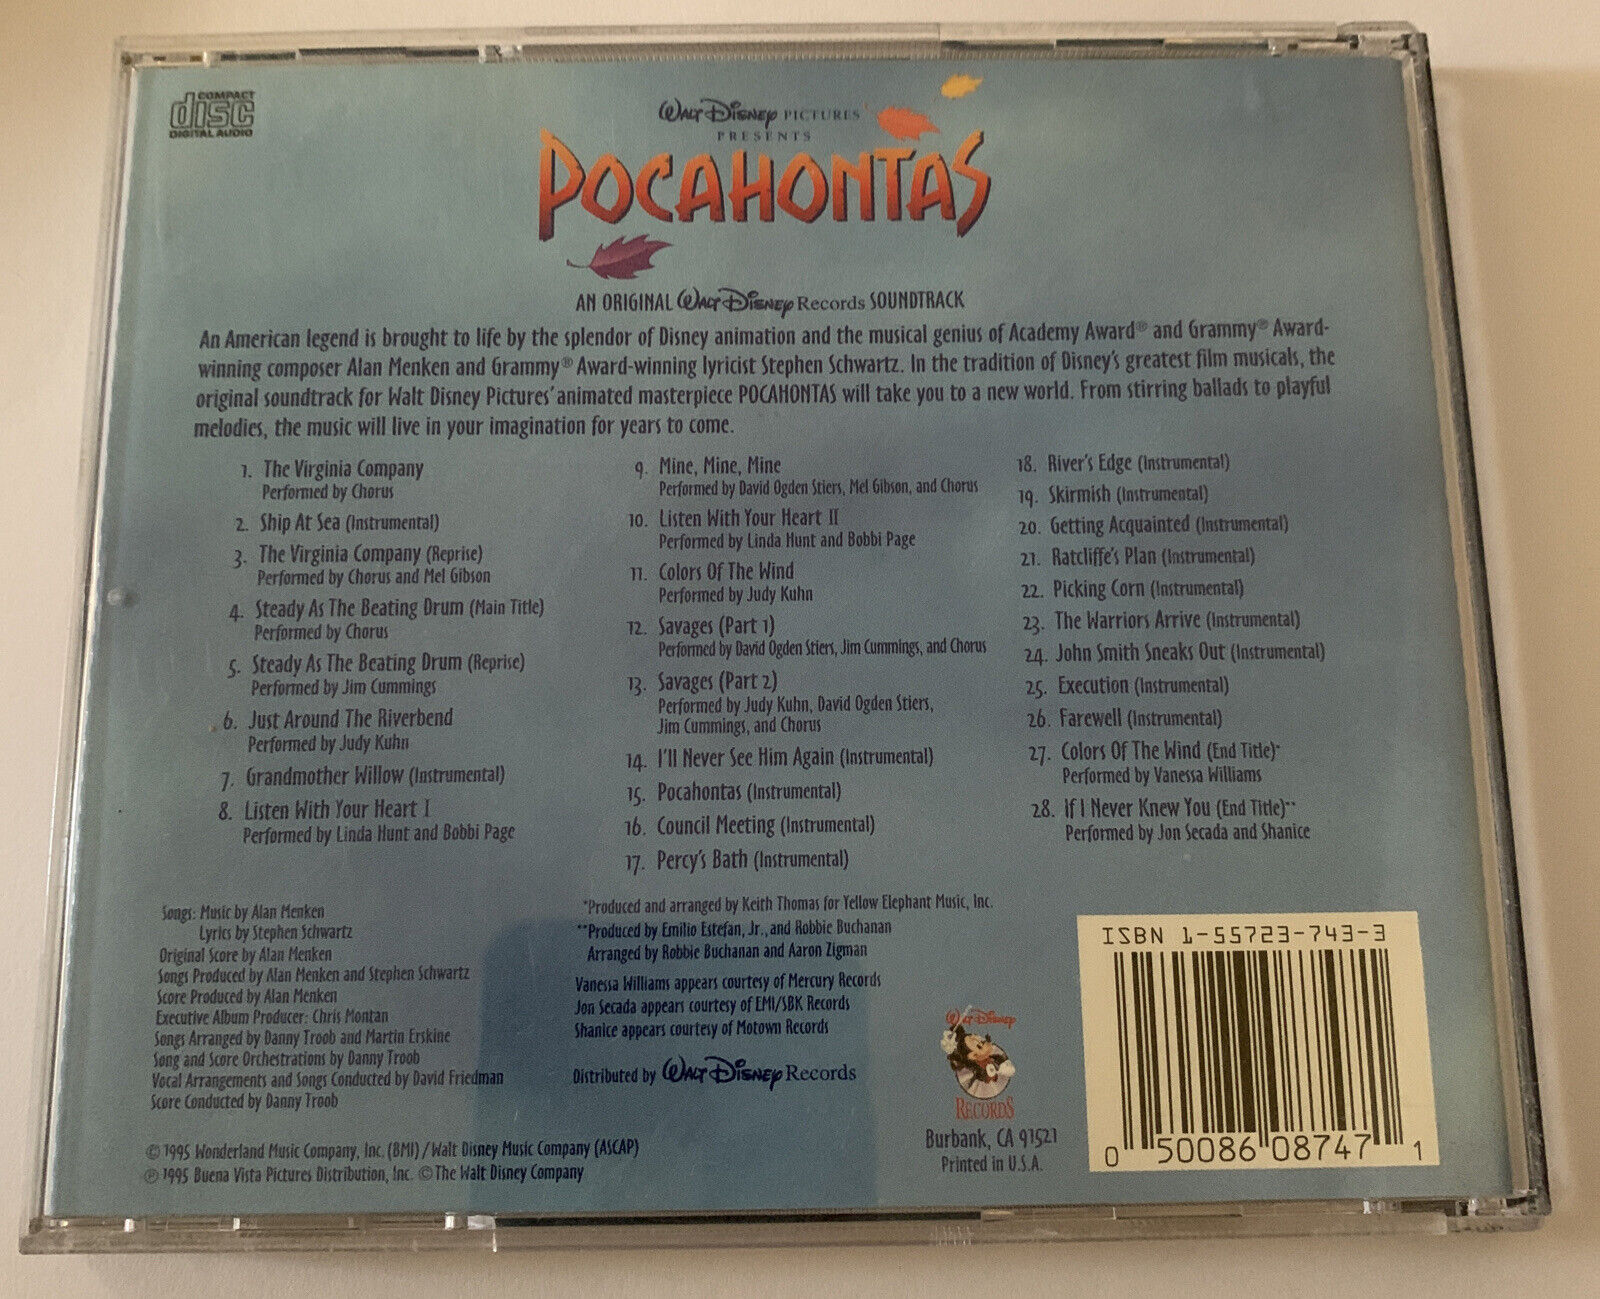 Pocahontas: An Original Walt Disney Records Soundtrack CD 50086087471 | eBay